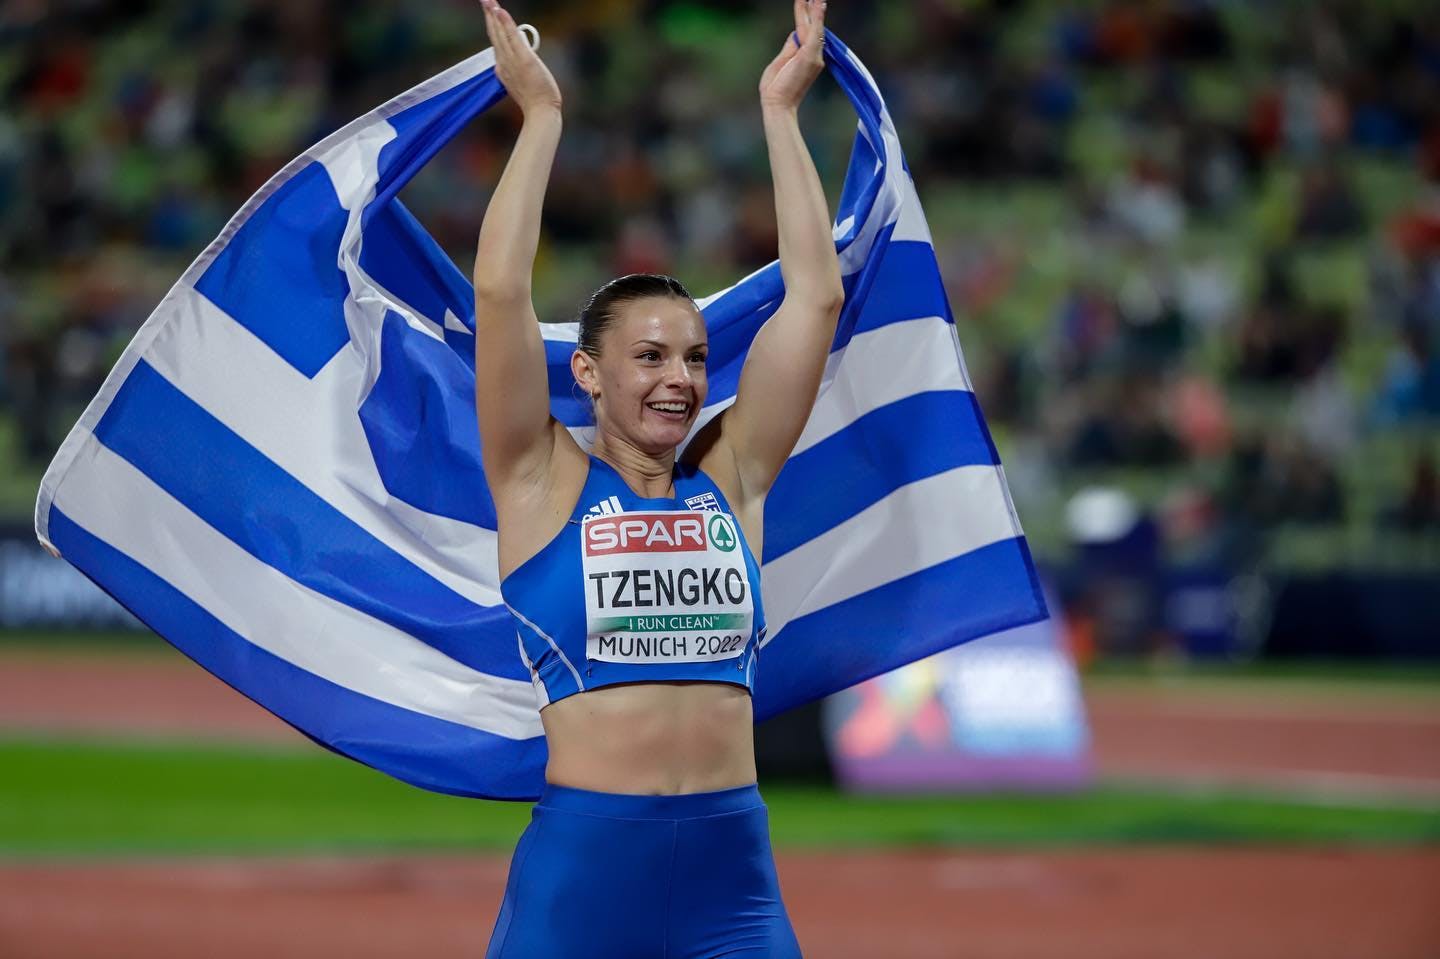 Η Ελίνα Τζένγκο θα είναι σημαιοφόρος της ελληνικής αποστολής στην Τελετή Έναρξης του Ευρωπαϊκού πρωταθλήματος ομάδων